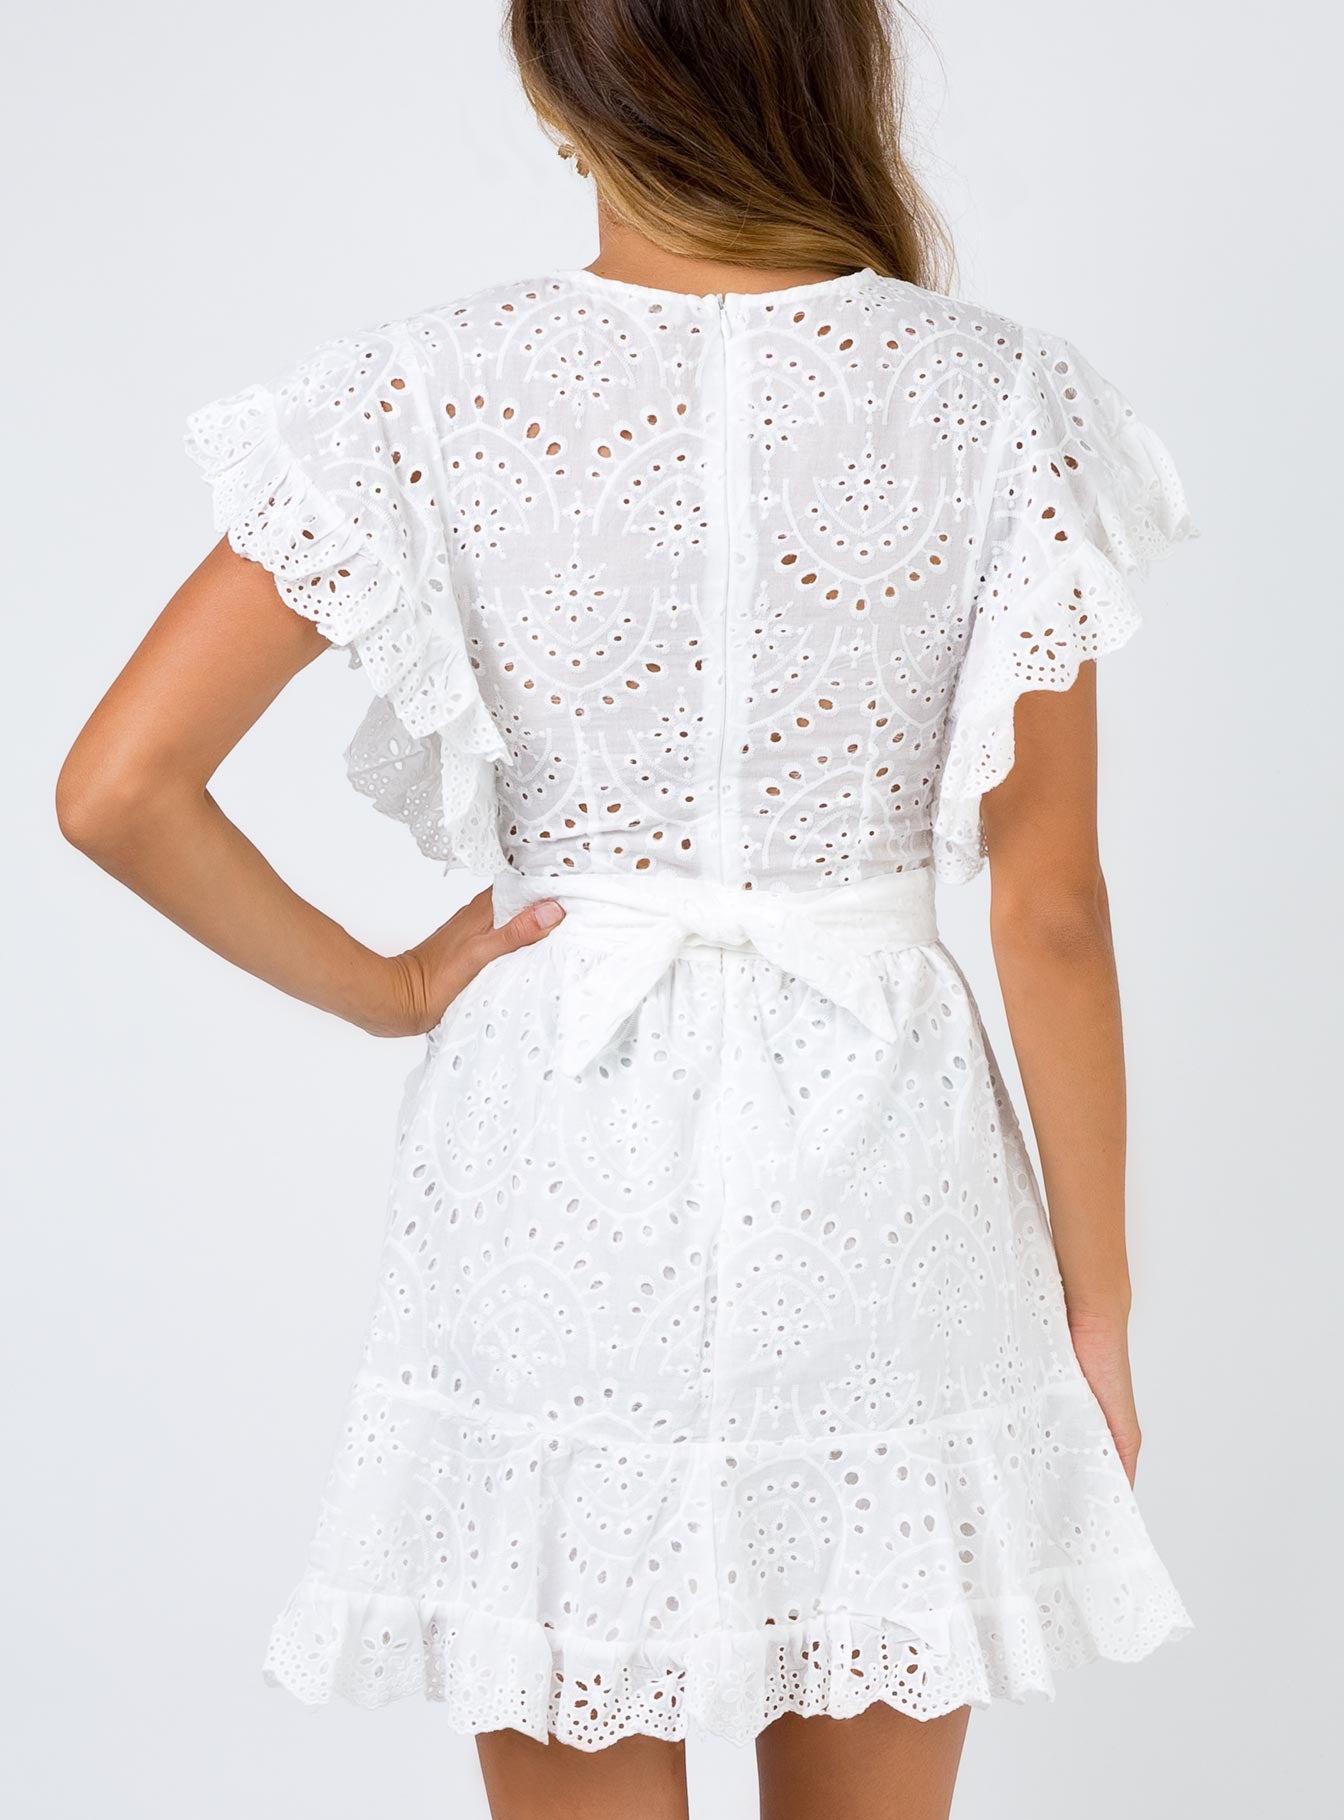 princess polly white lace dress